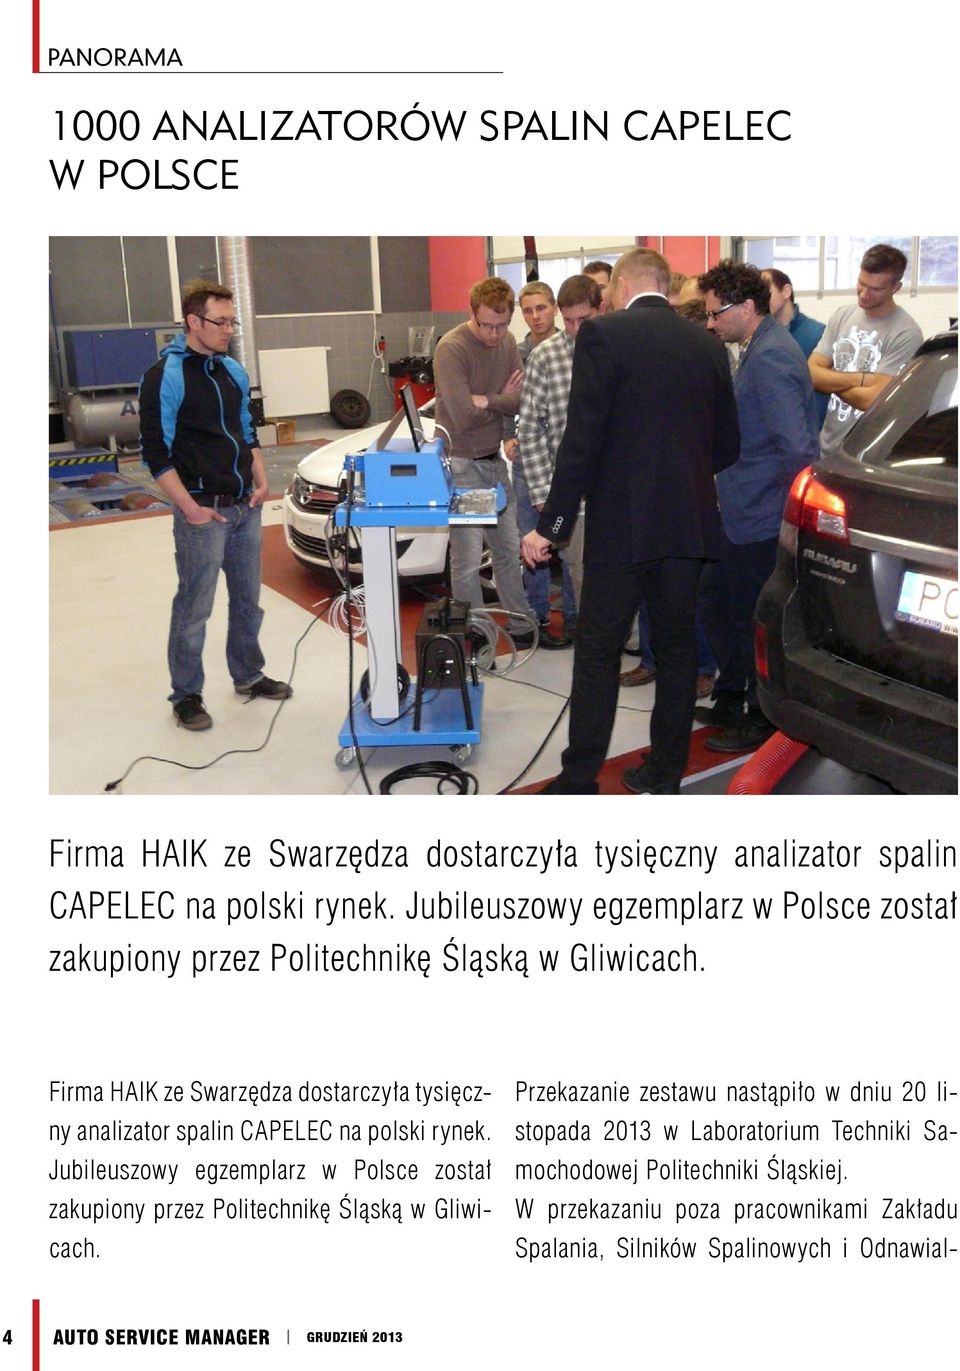 Firma HAIK ze Swarzędza dostarczyła tysięczny analizator spalin CAPELEC na polski rynek.